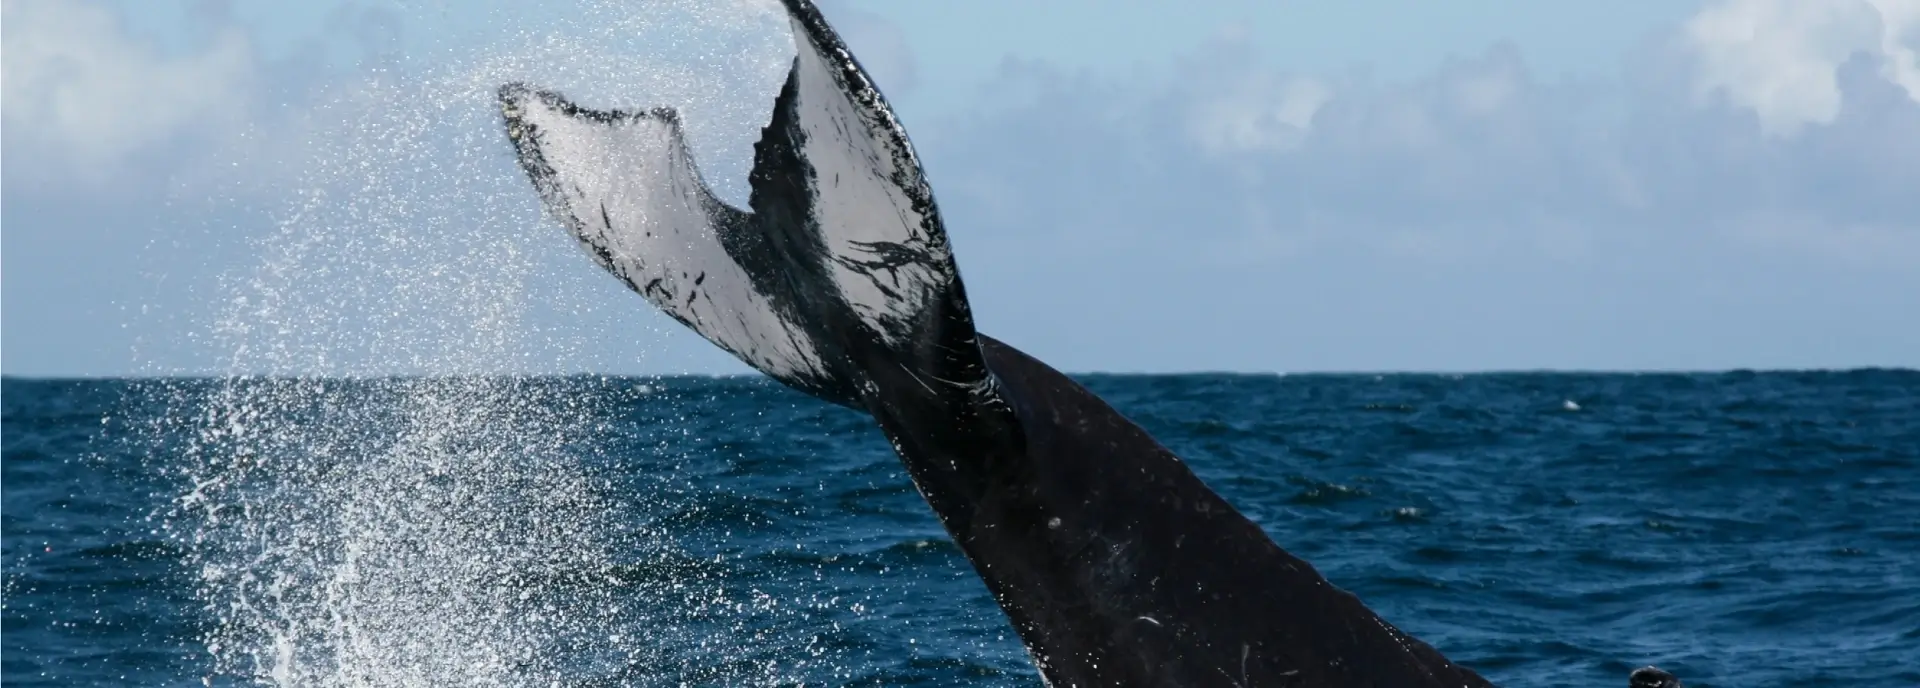 Humpback whale sanctuary: nature's majestic ballet